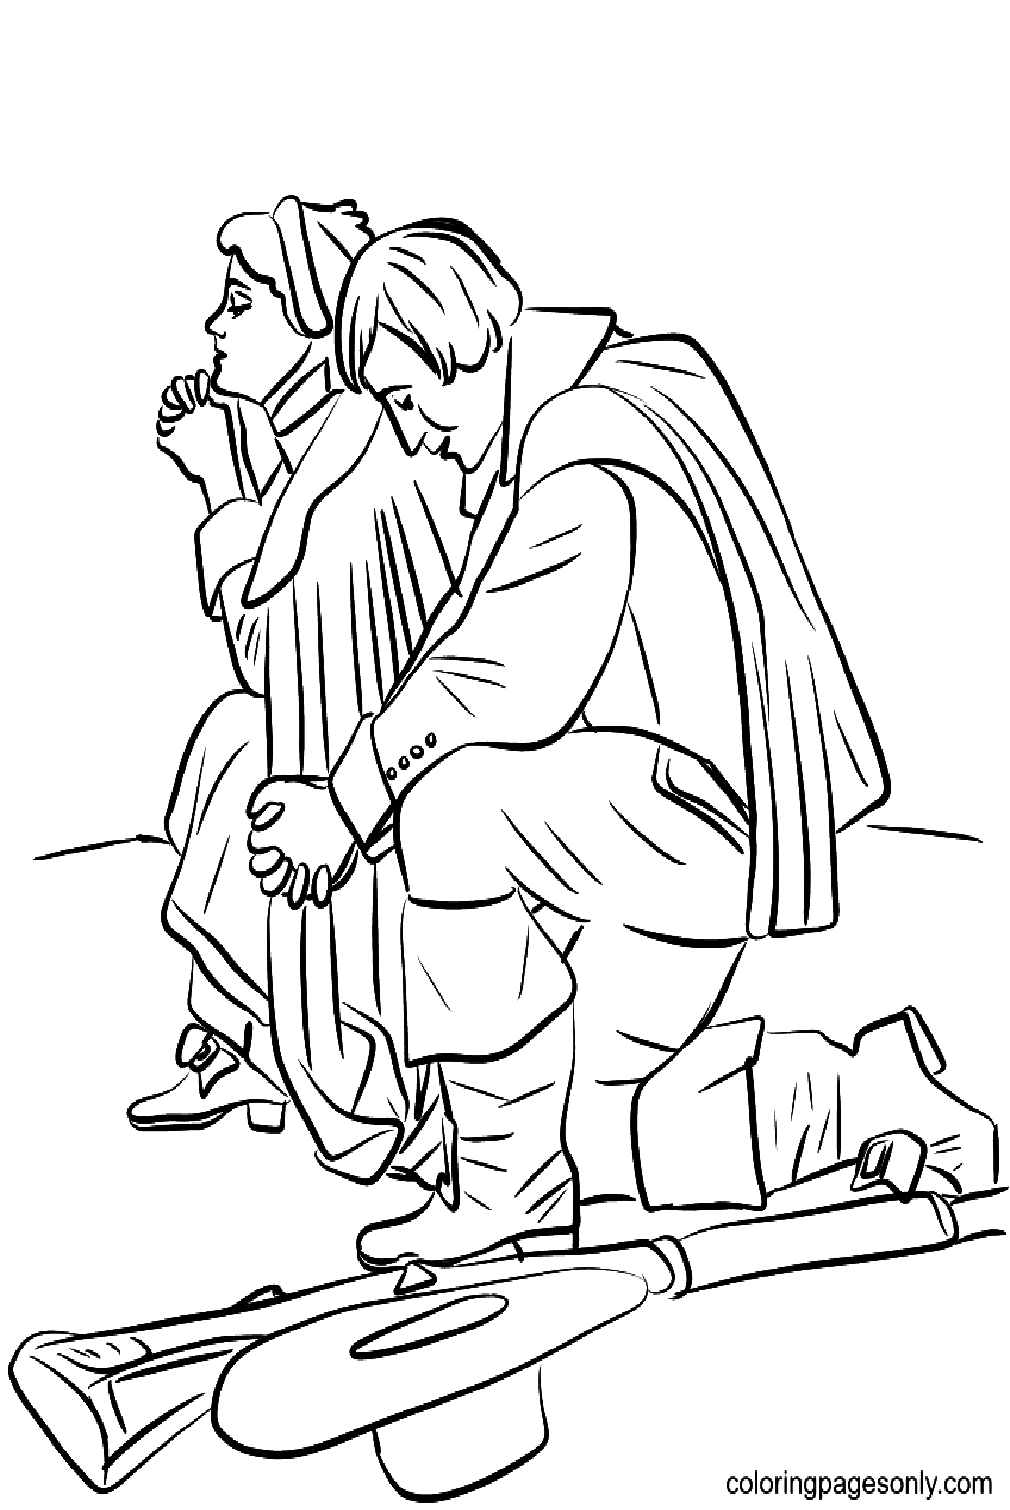 Casal peregrino ajoelhado em oração no Dia de Ação de Graças